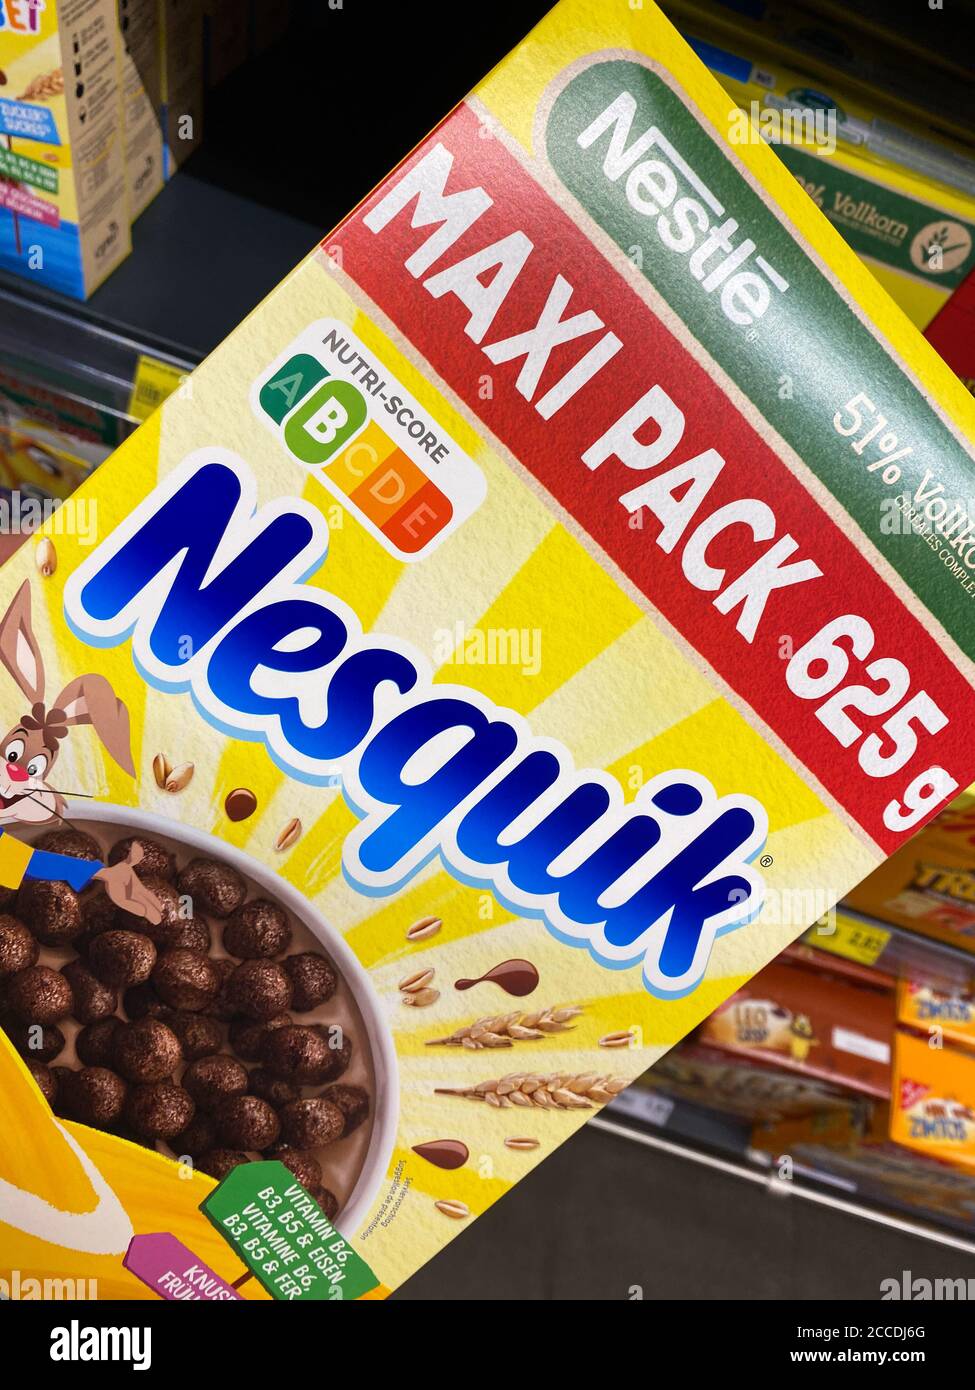 Viersen, Germania - 9 luglio. 2020: Closeup di scatola Nesquik cioccolato colazione muesli nel supermercato tedesco (concentrarsi sul centro della scatola) Foto Stock